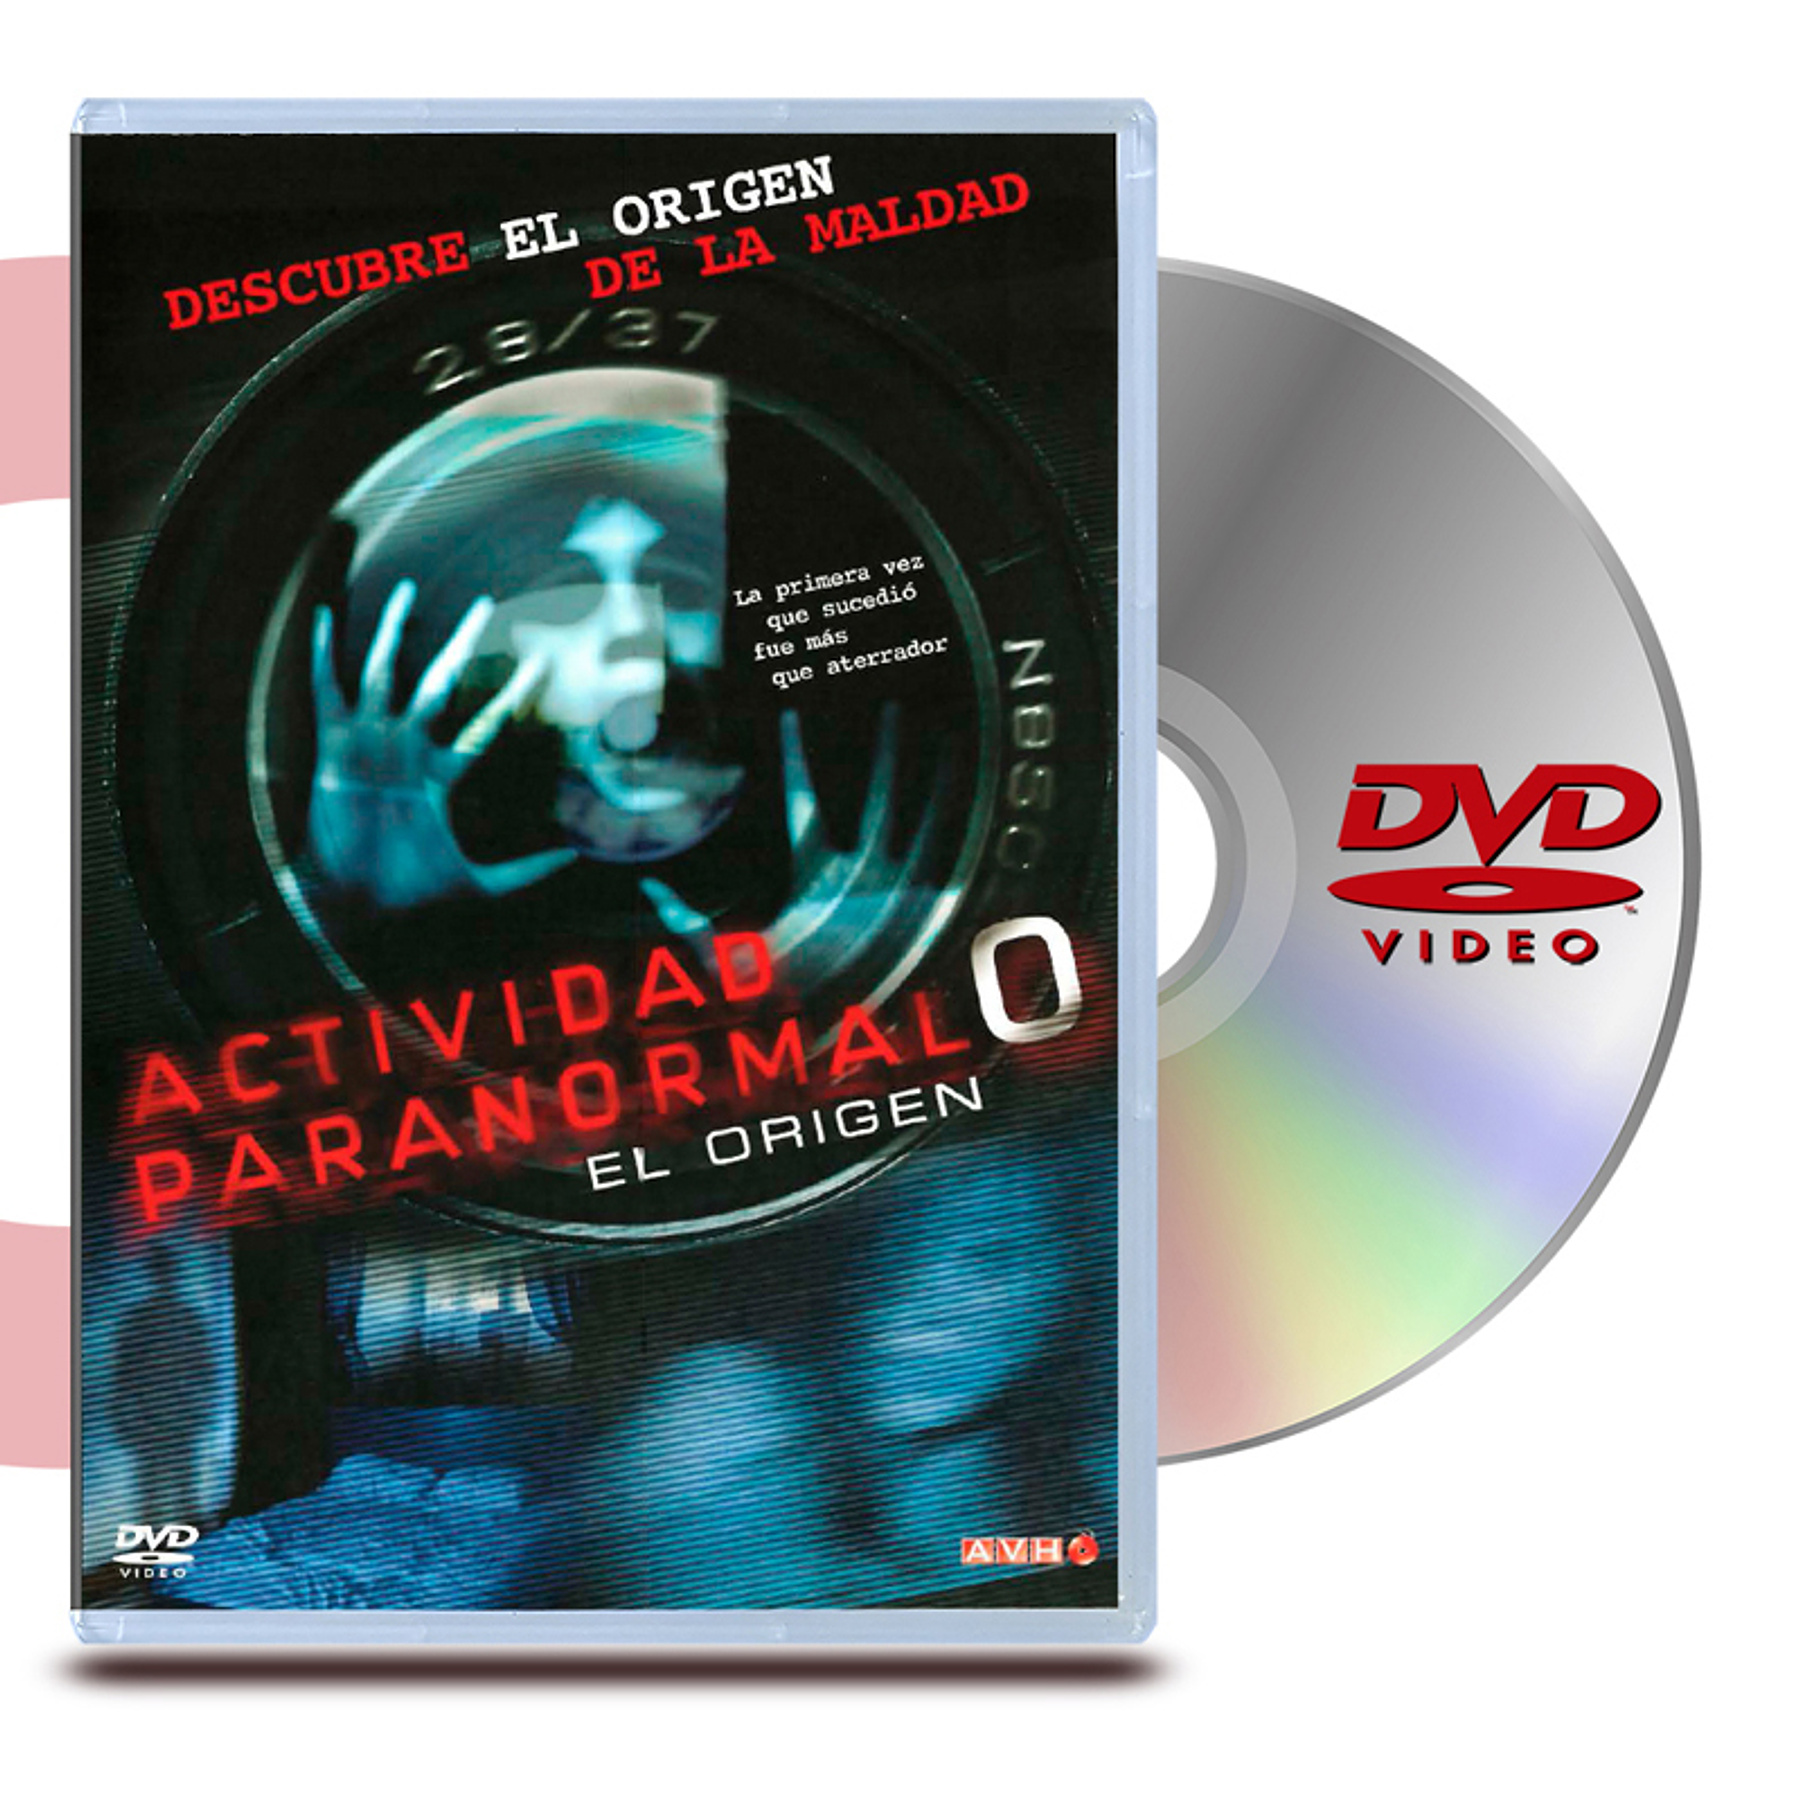 DVD ACTIVIDAD PARANORMAL 0: EL ORIGEN